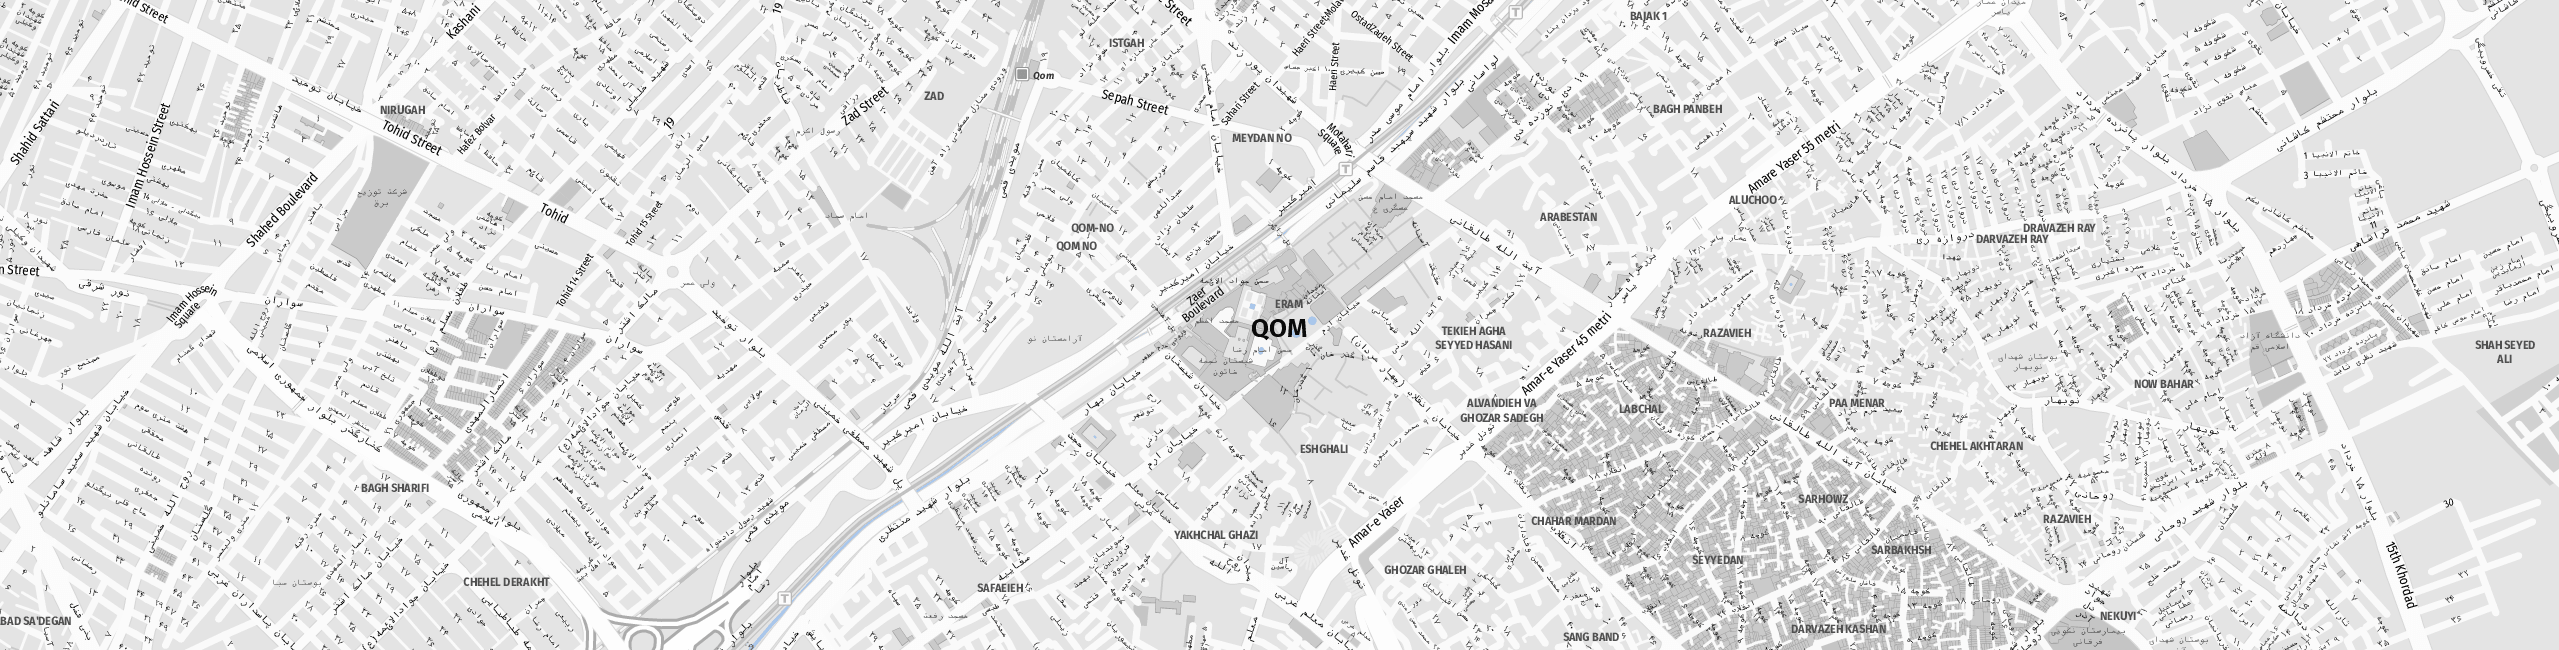 Stadtplan Qom zum Downloaden.